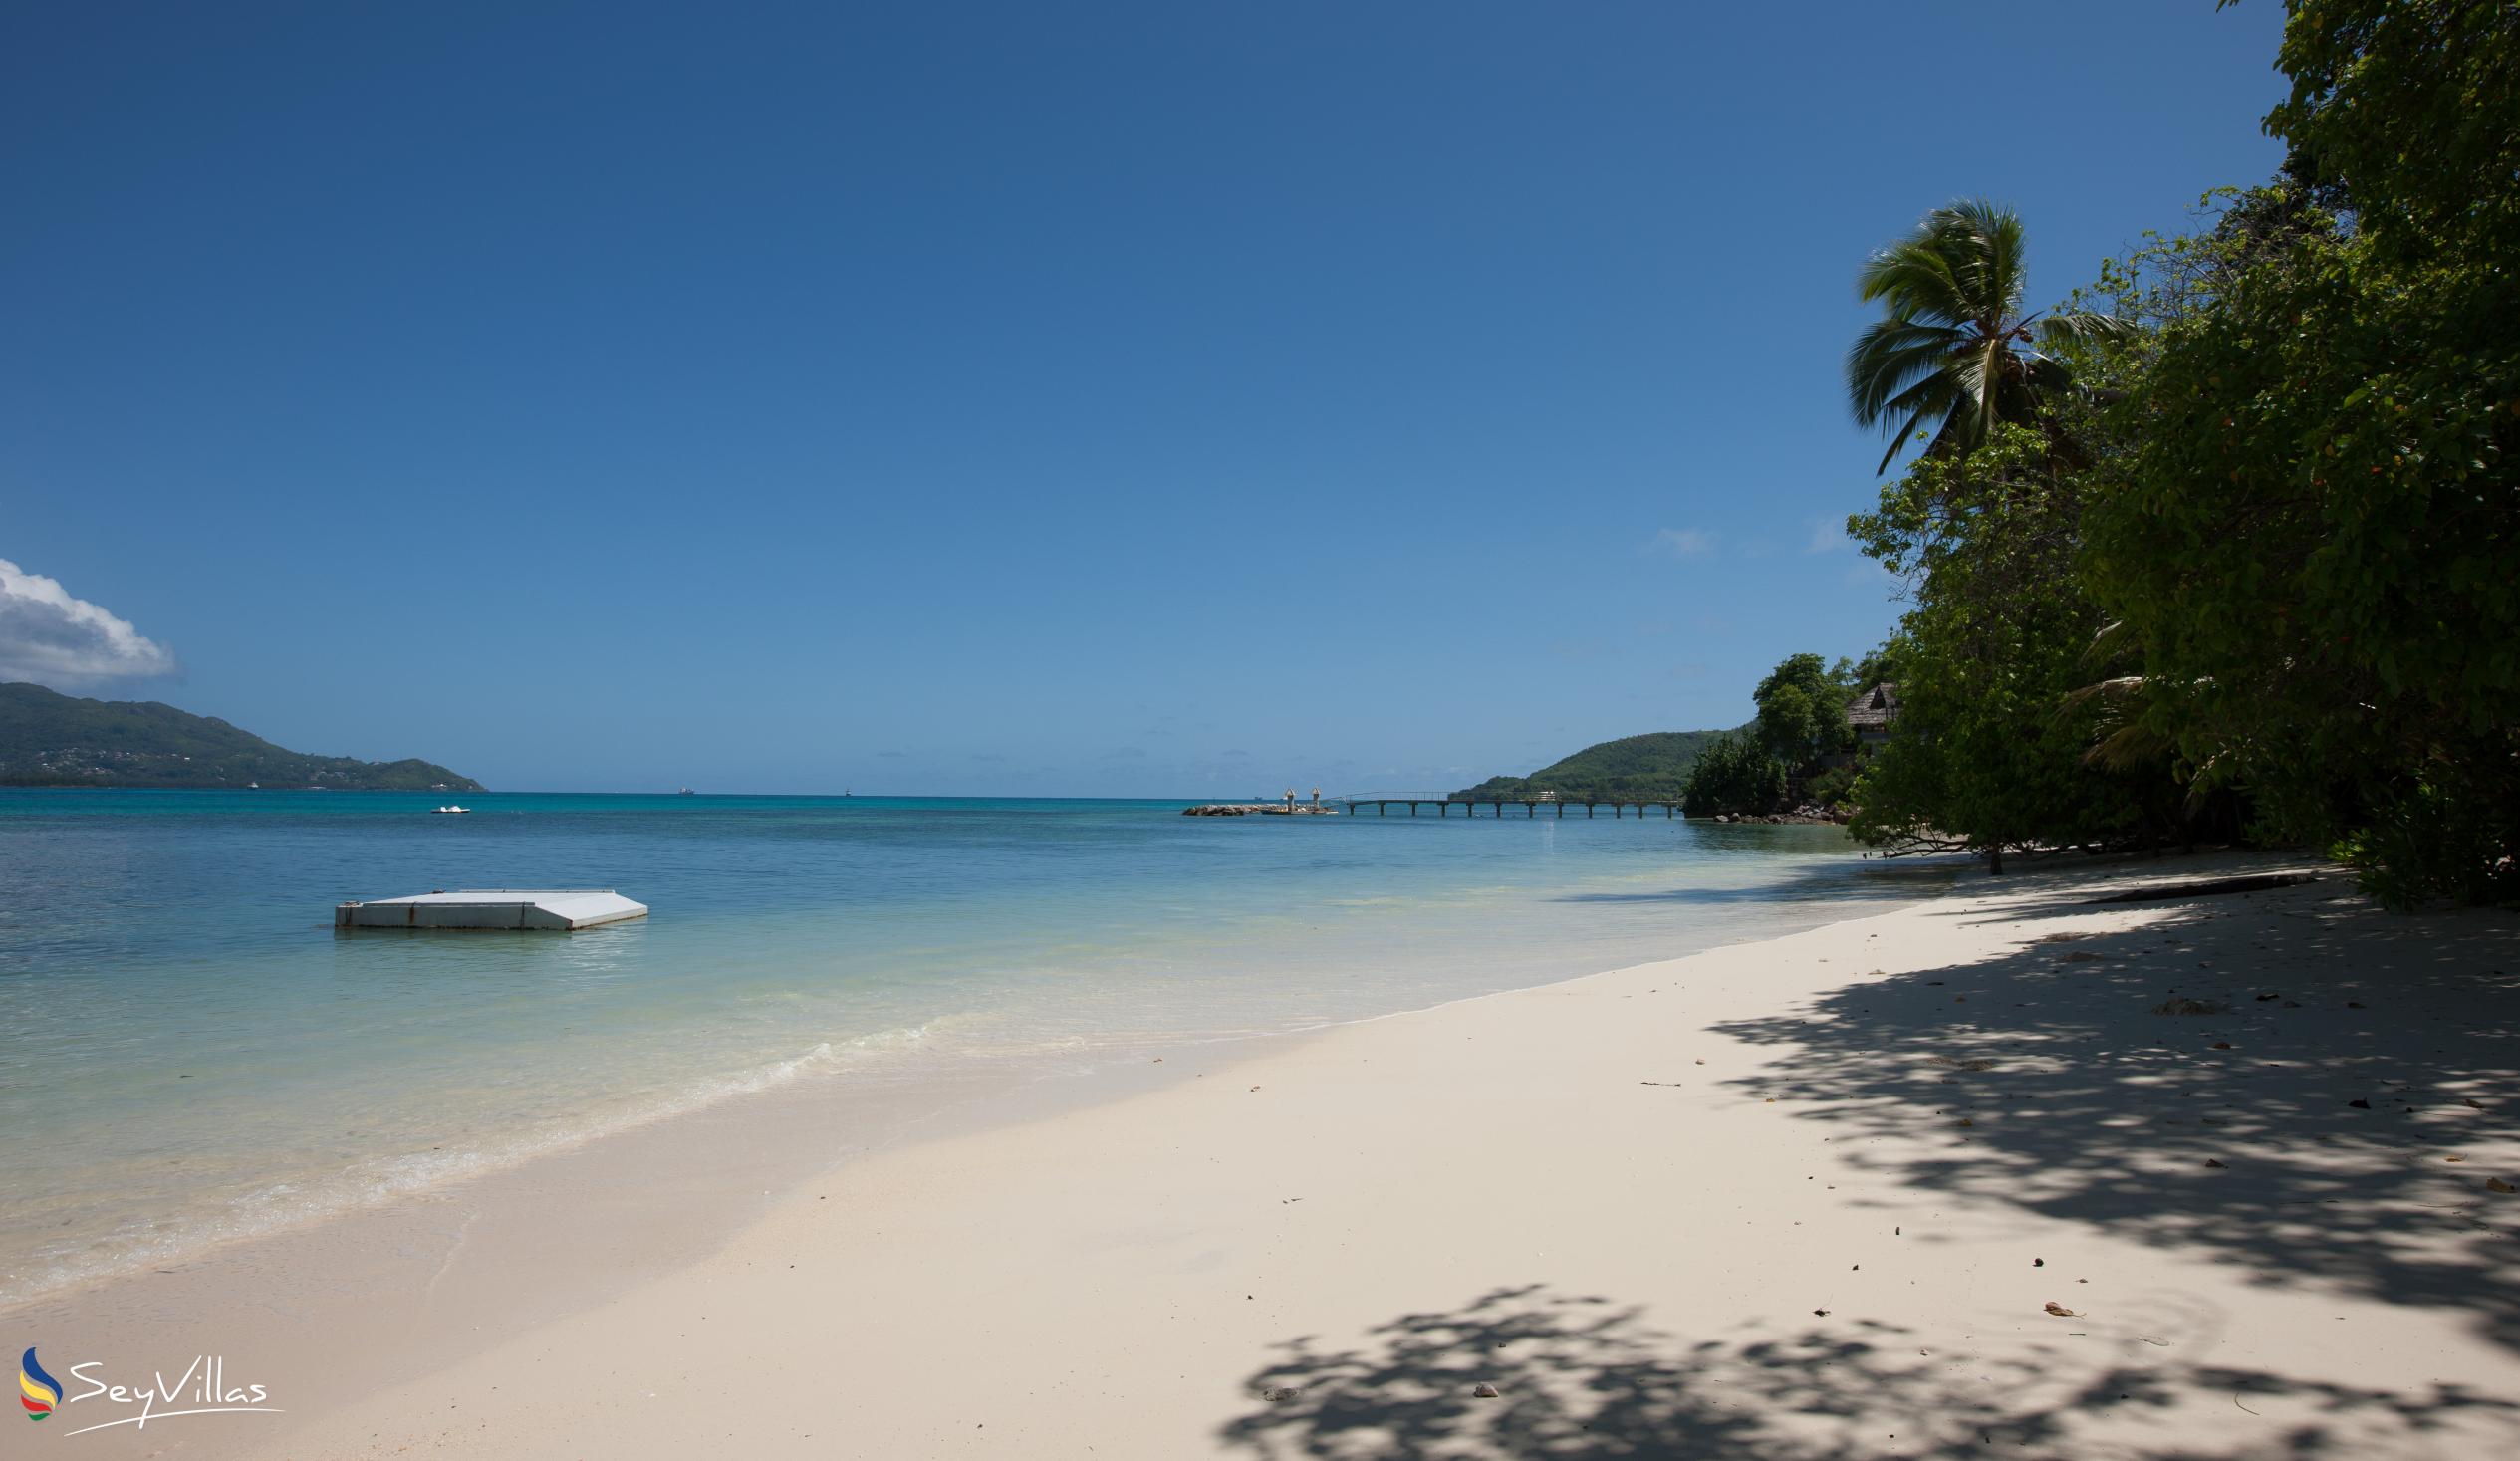 Photo 9: Takamaka Beach - Cerf Island (Seychelles)